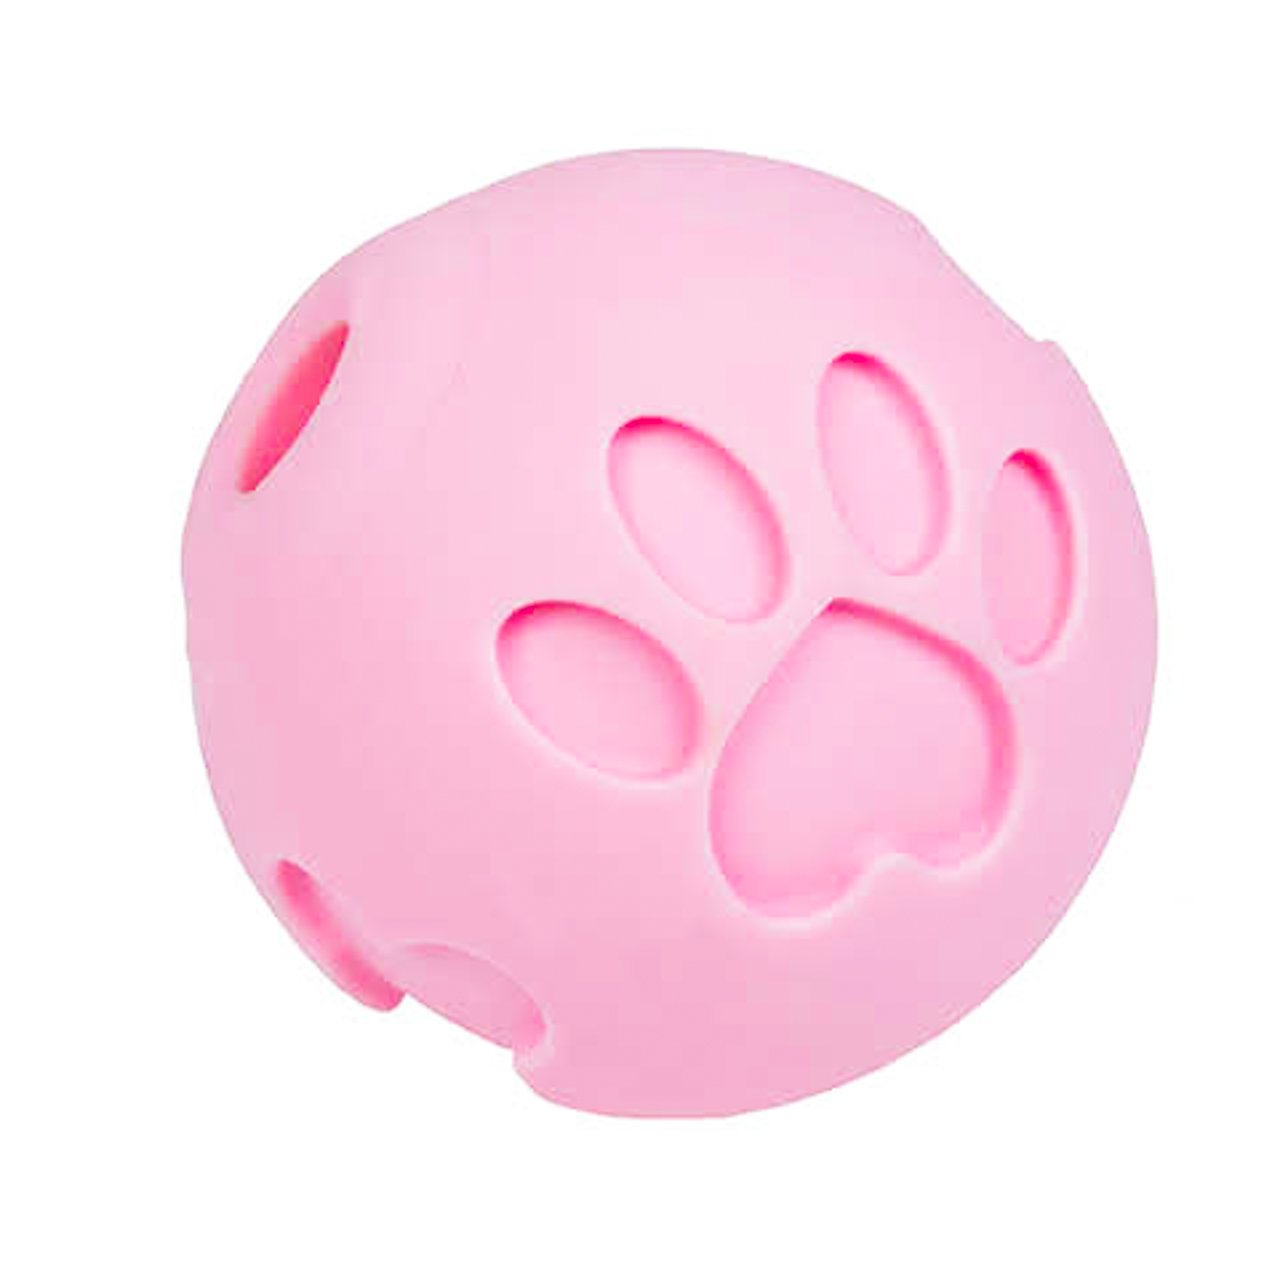 http://www.petique.com/cdn/shop/products/petique-non-toxic-treat-ball-pink-dog_c32d66dc-aabb-45d2-8b01-5e66fd5311f1.jpg?v=1655512429